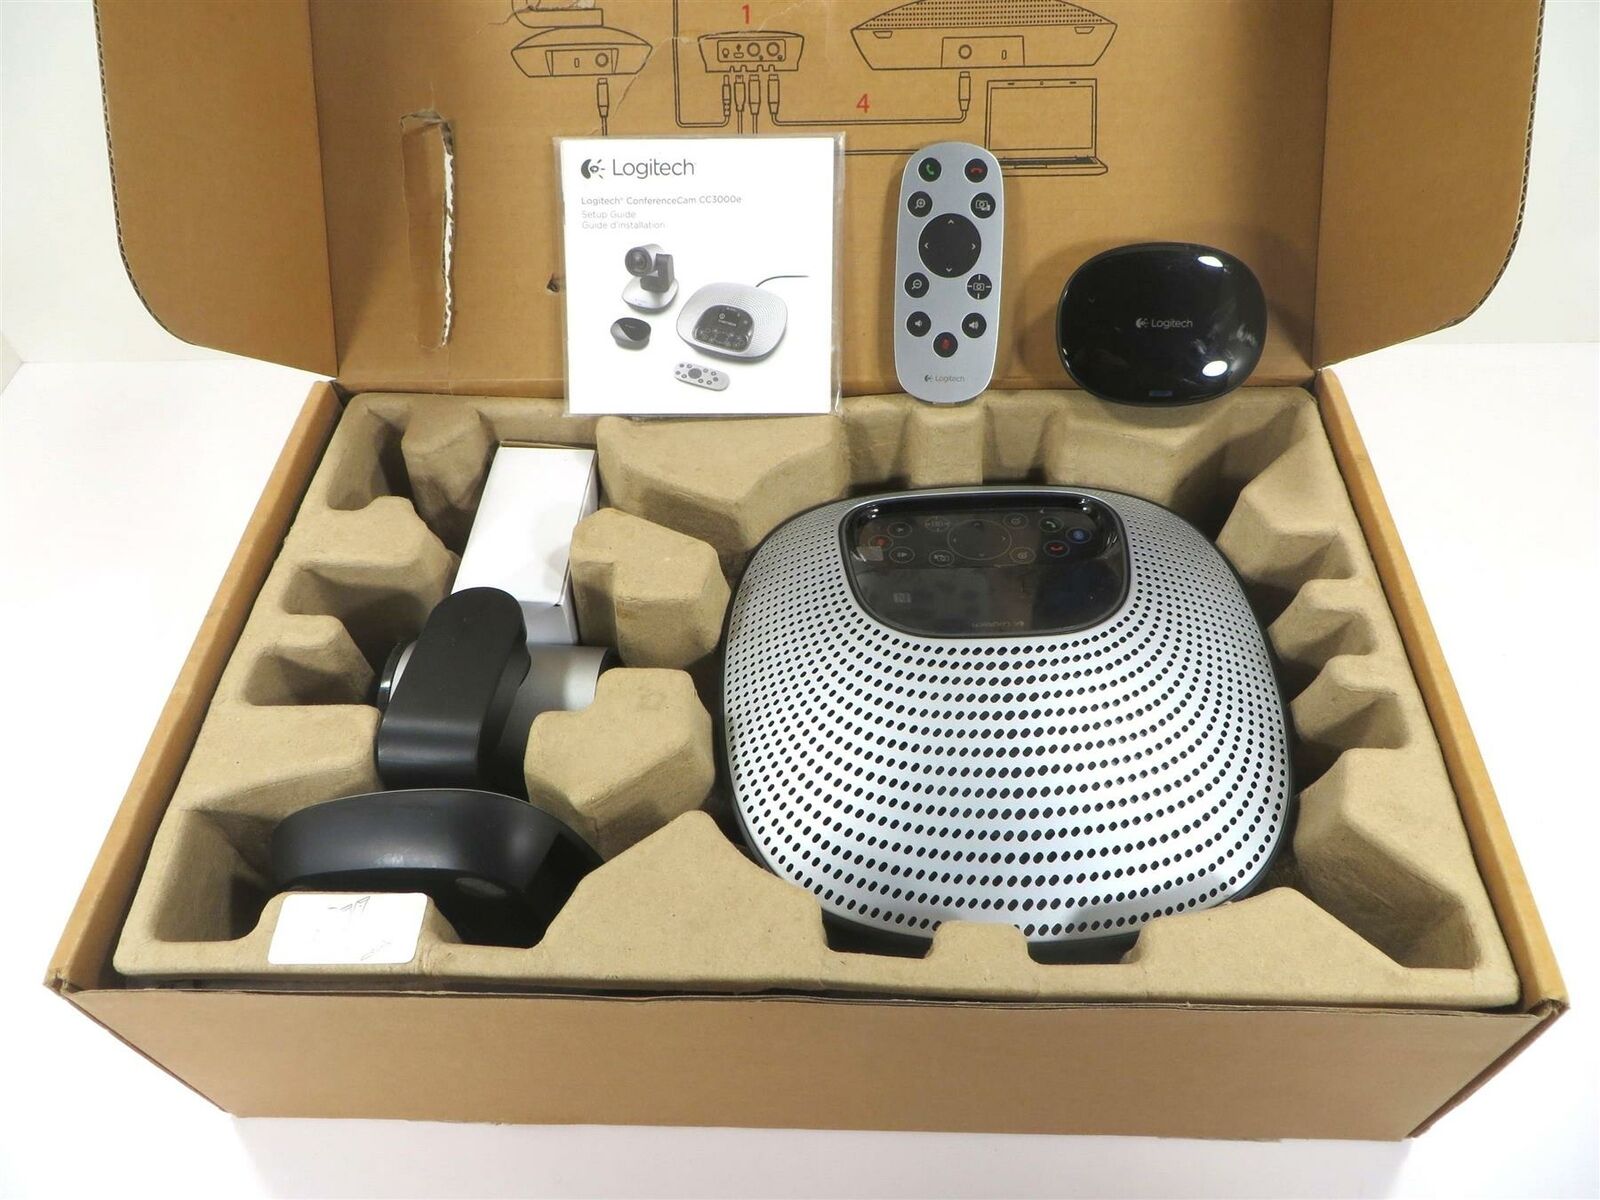 Logitech ConferenceCam CC3000e Camera + Speakerphone Hub - Tested | eBay